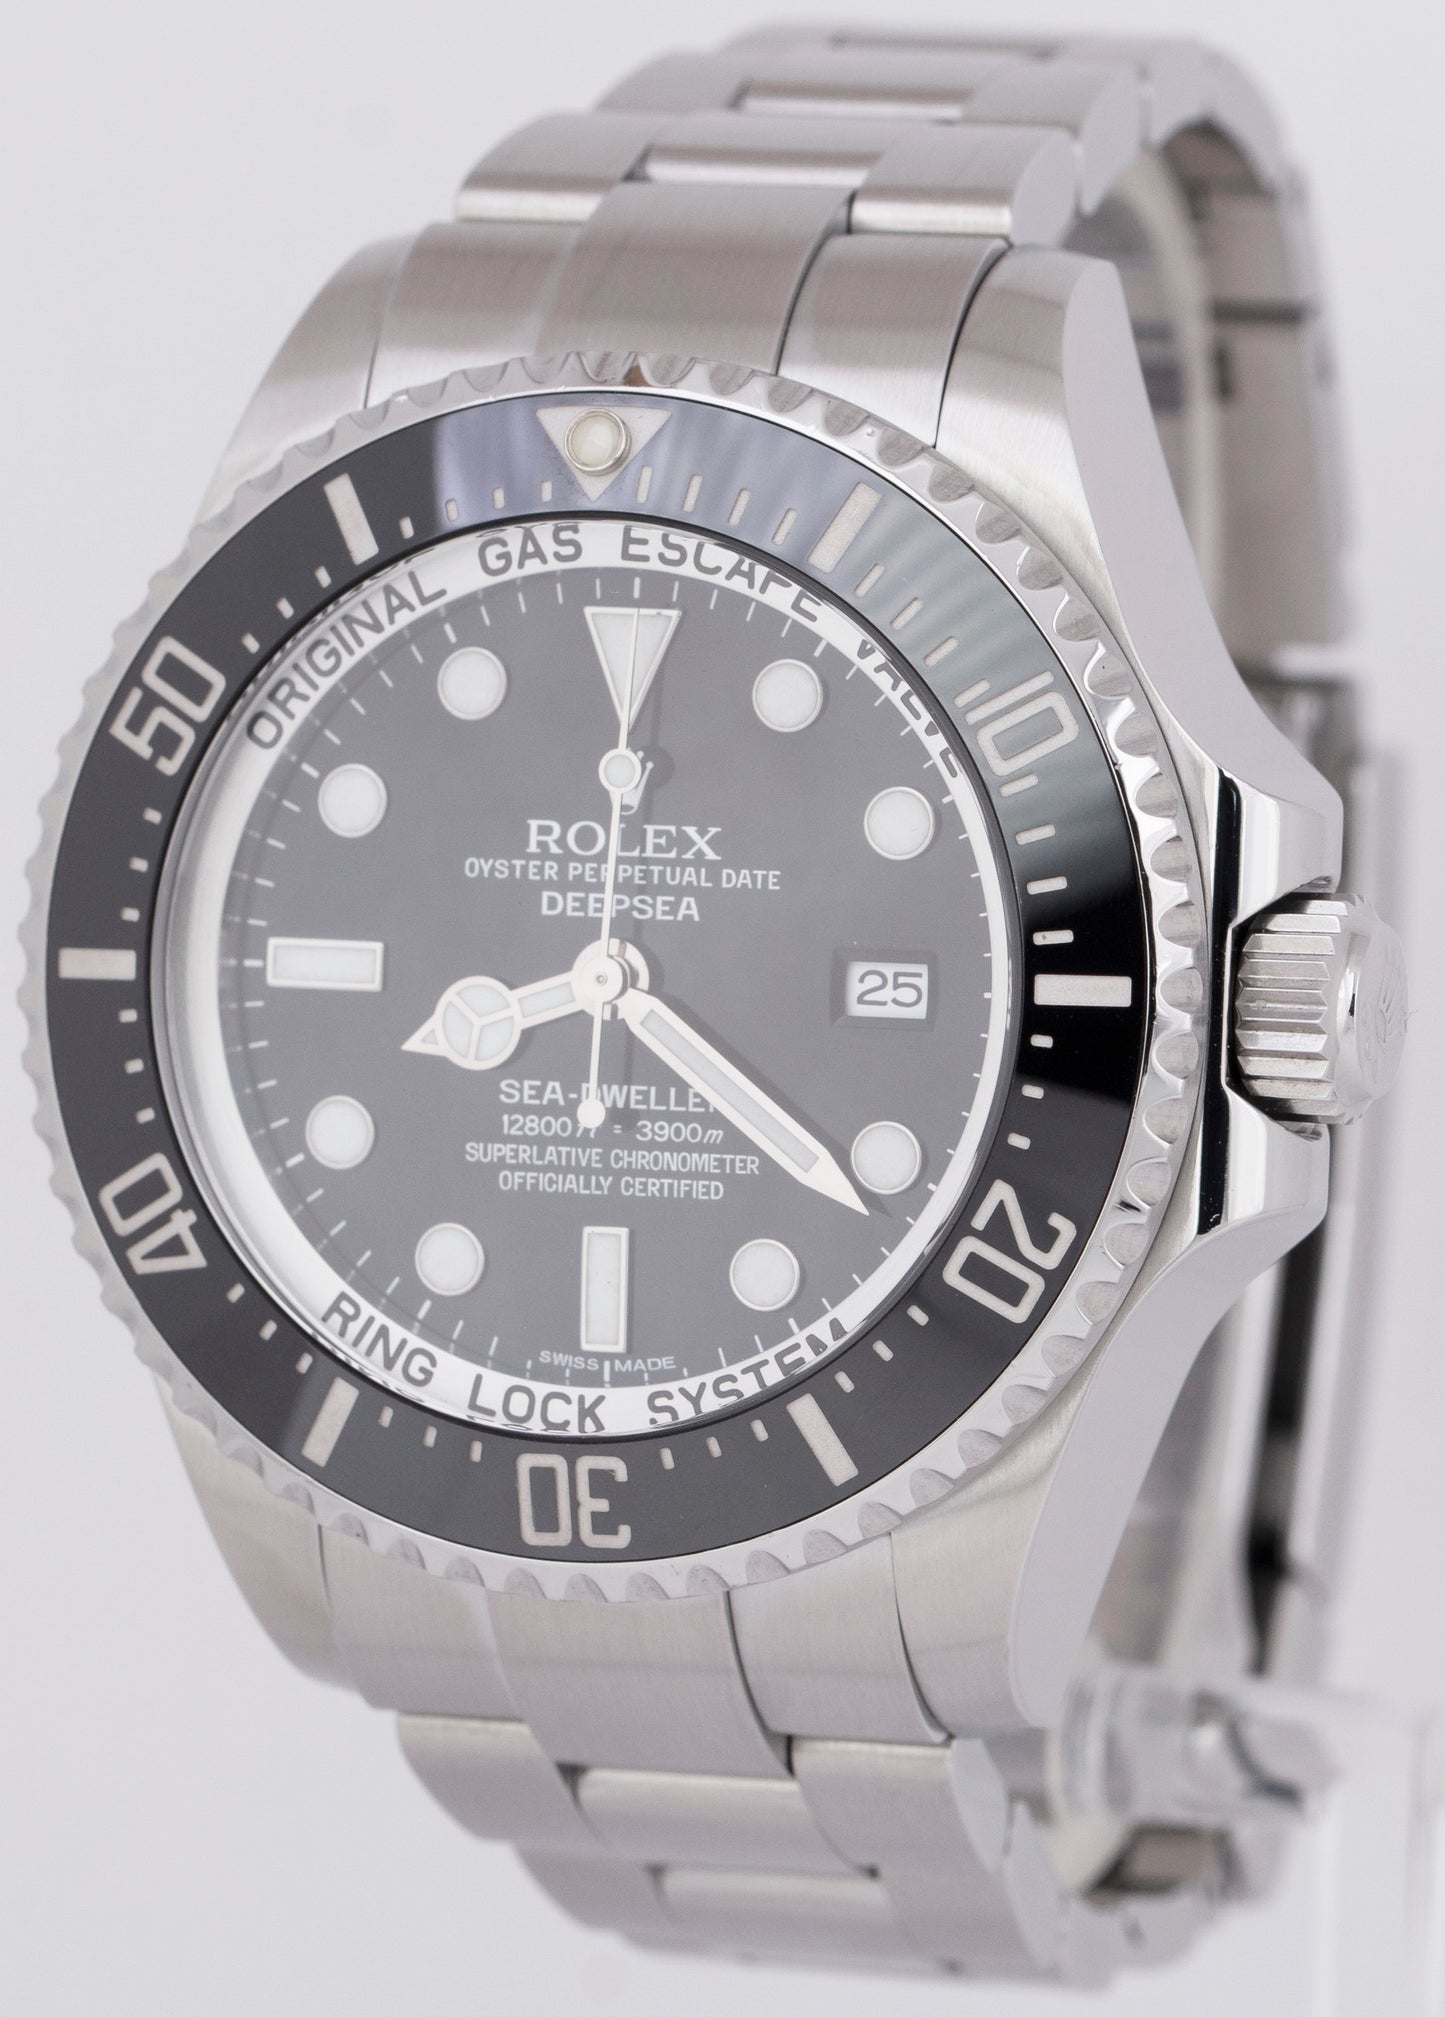 MINT Rolex Sea-Dweller Deepsea PAPERS Steel 44mm Black Ceramic Watch 116660 B+P